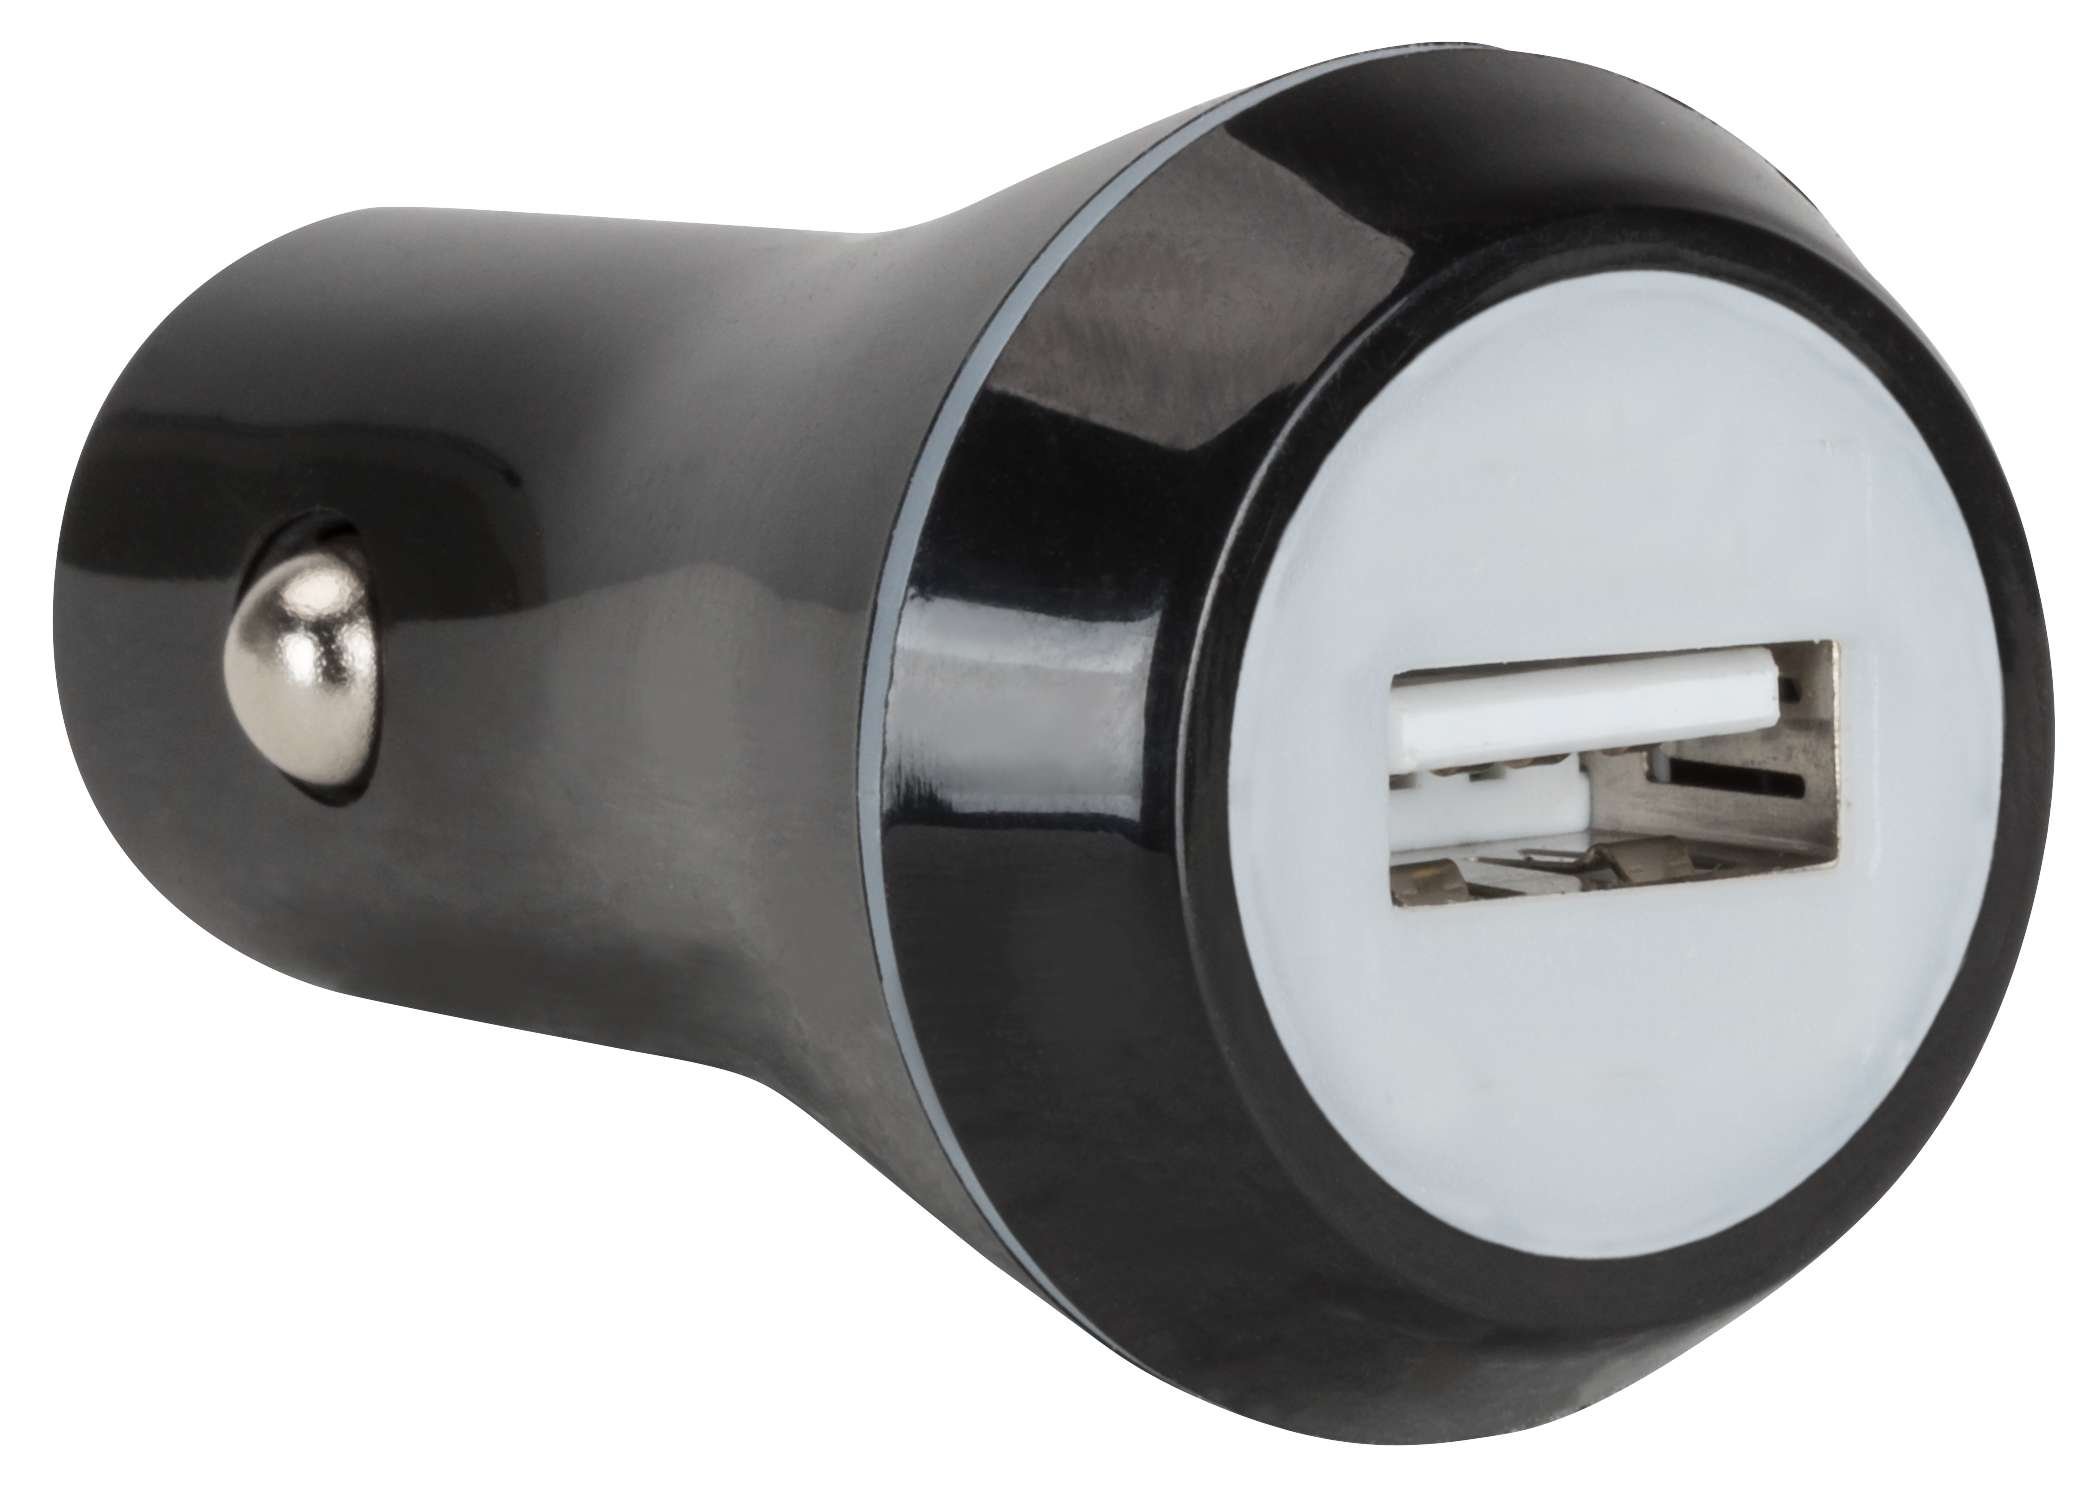 Chargeur USB pour voiture - Adaptateur 12/24V en noir